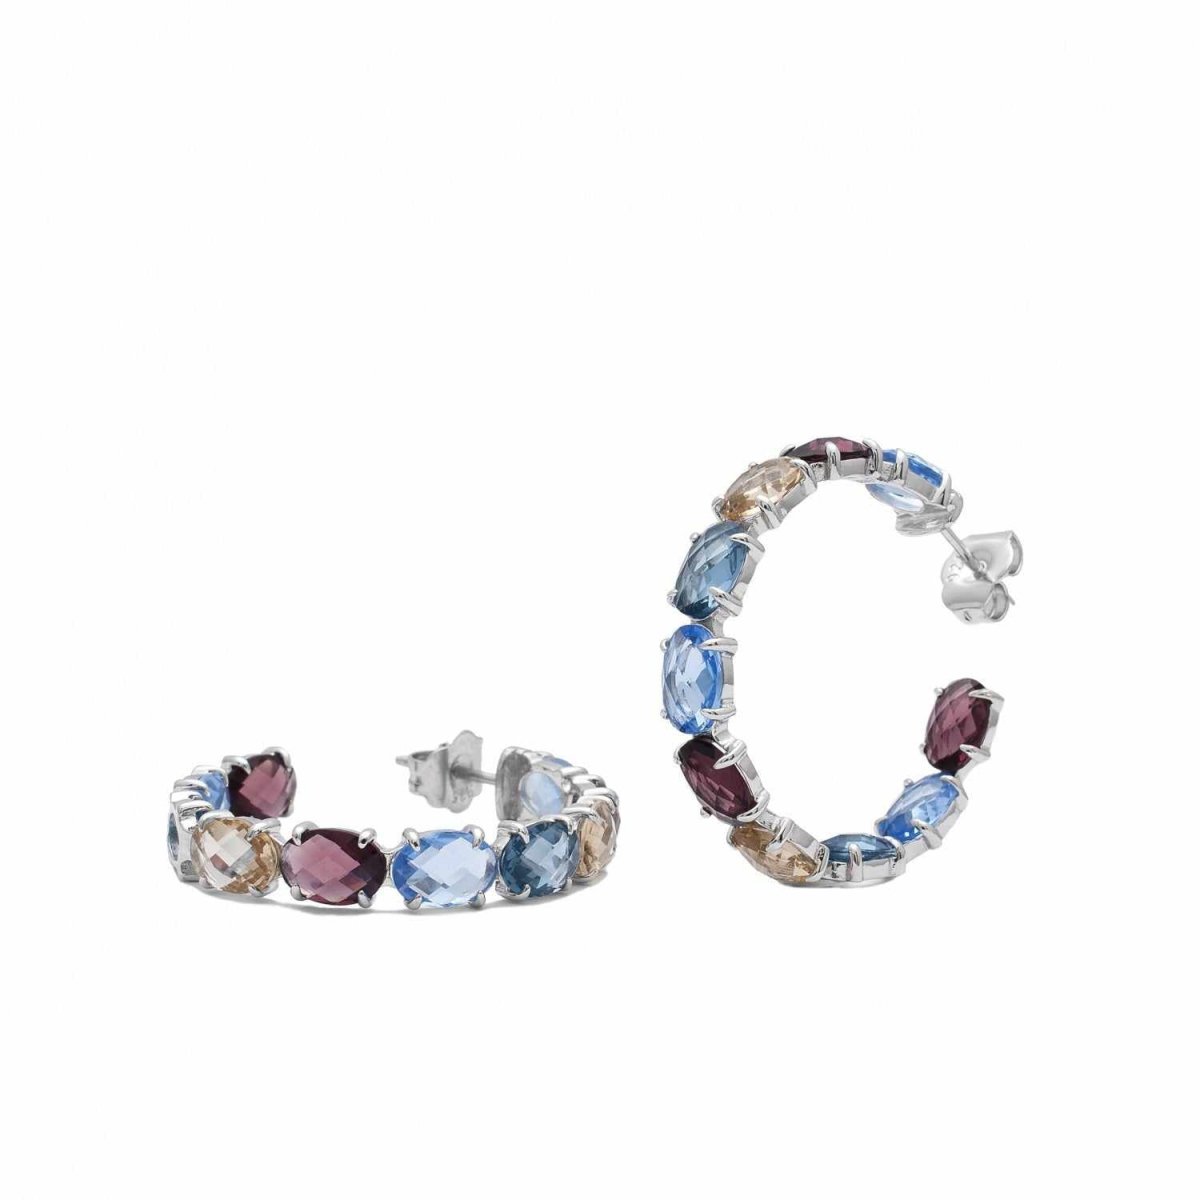 Pendiente · Pendientes aros con piedras formados por gemas en tonos fríos